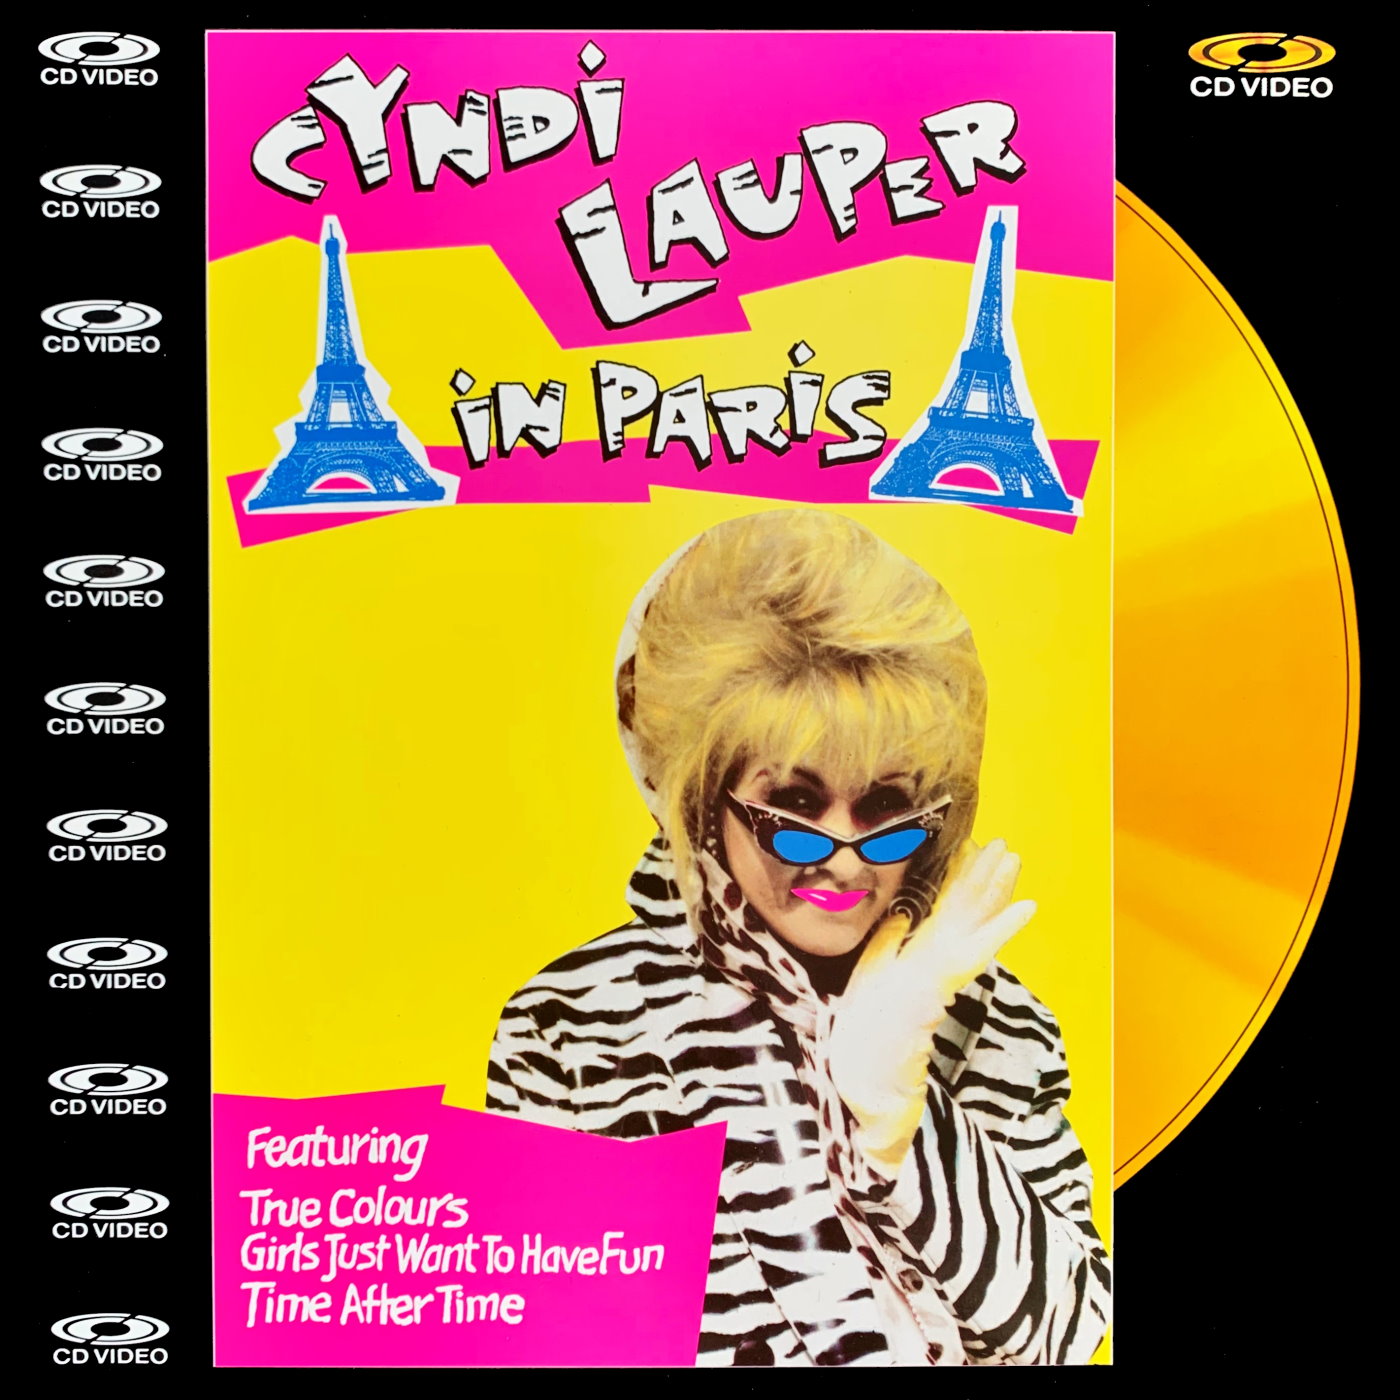 Cover - Cyndi Lauper Live in Paris.jpg